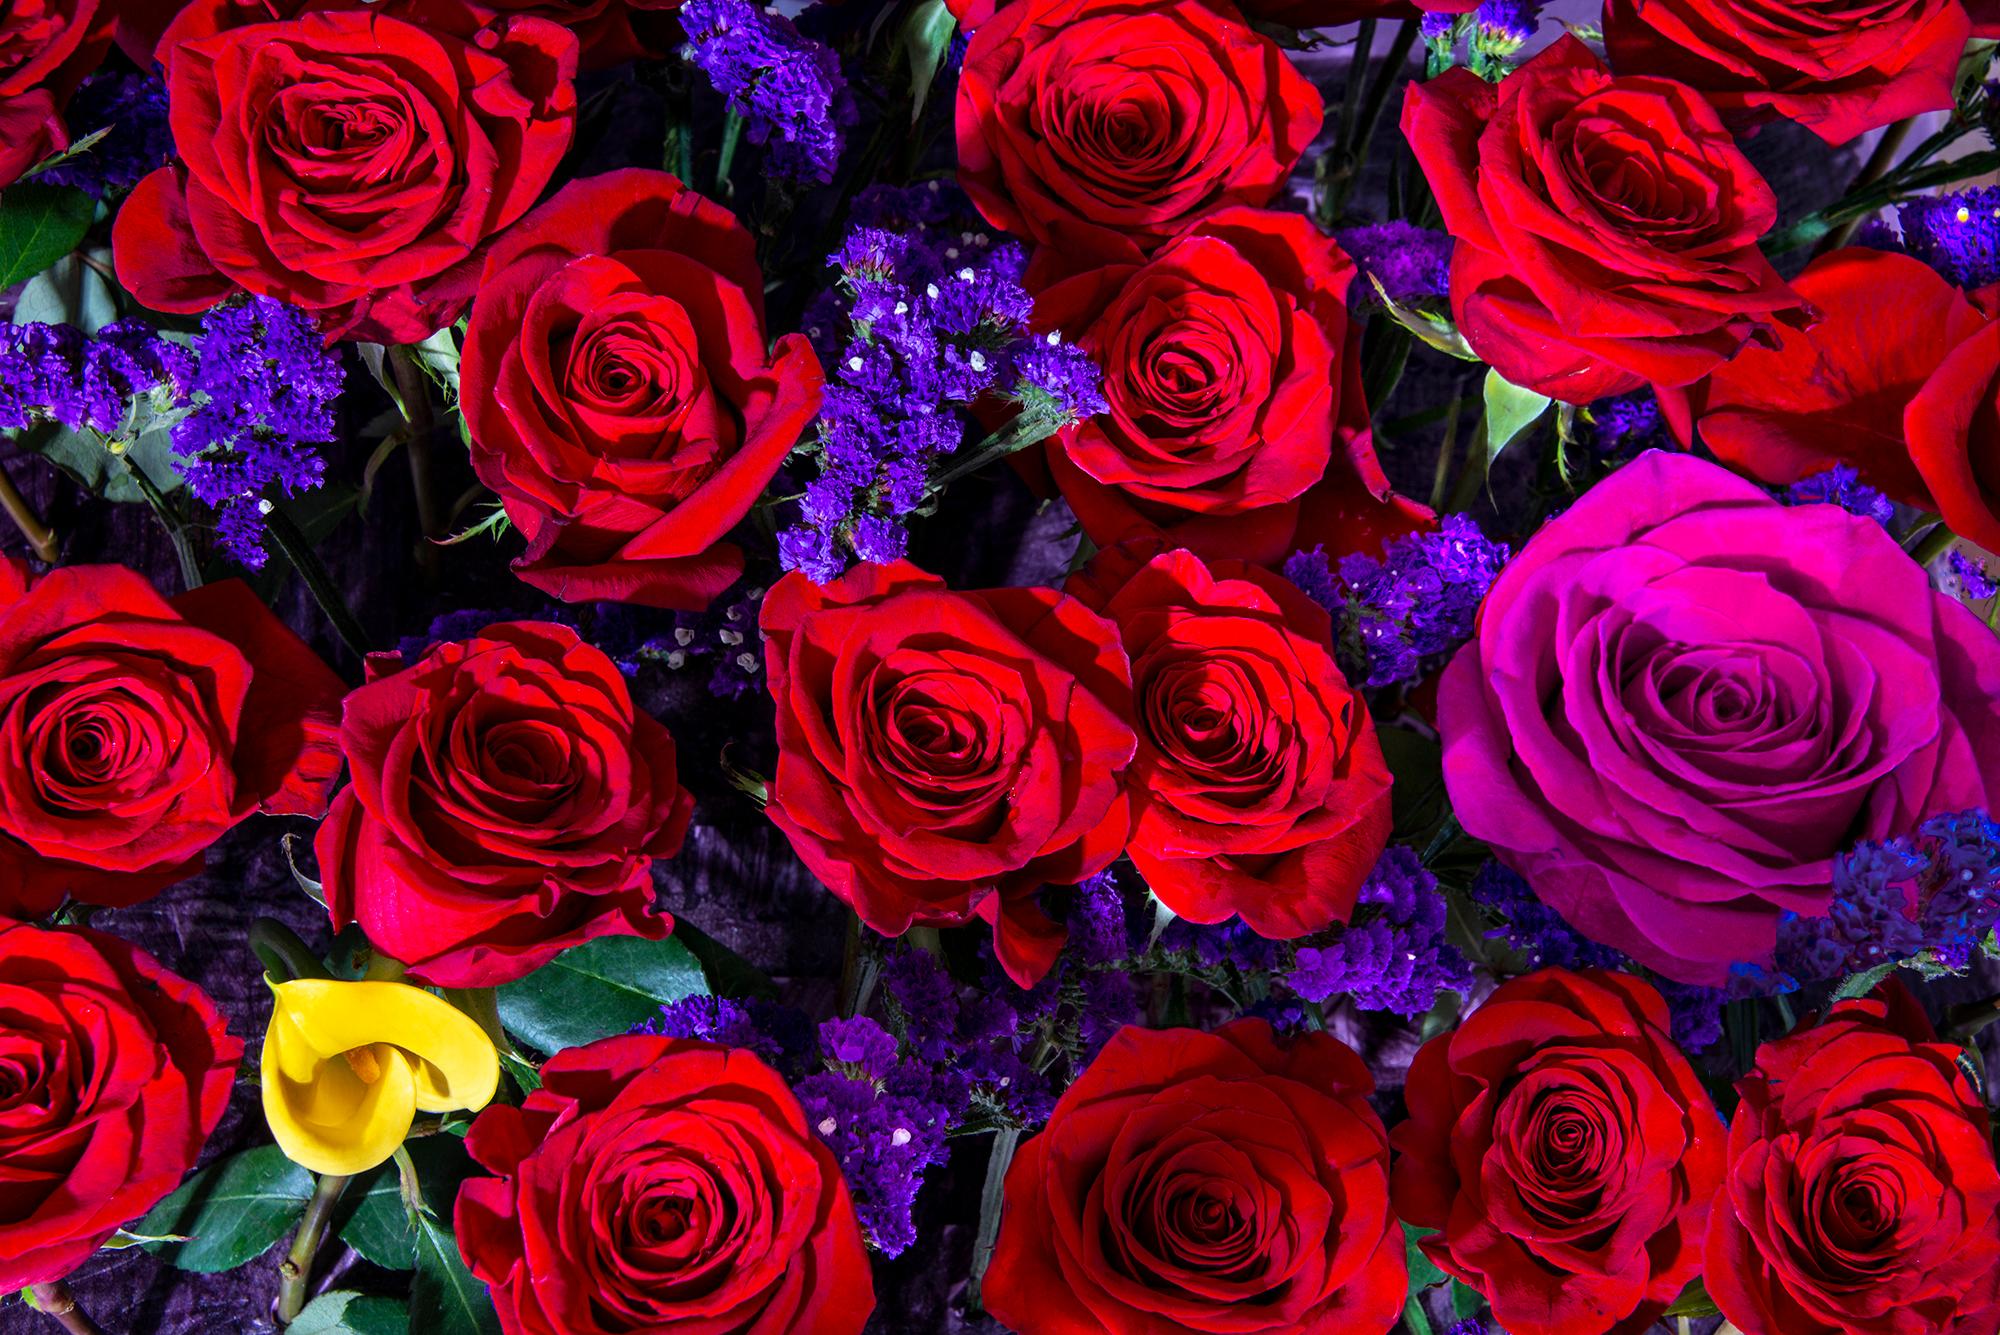 Robert Funk Landscape Photograph – Gruppe von roten Rosen. Rosa Rosen. Schöne Blumen